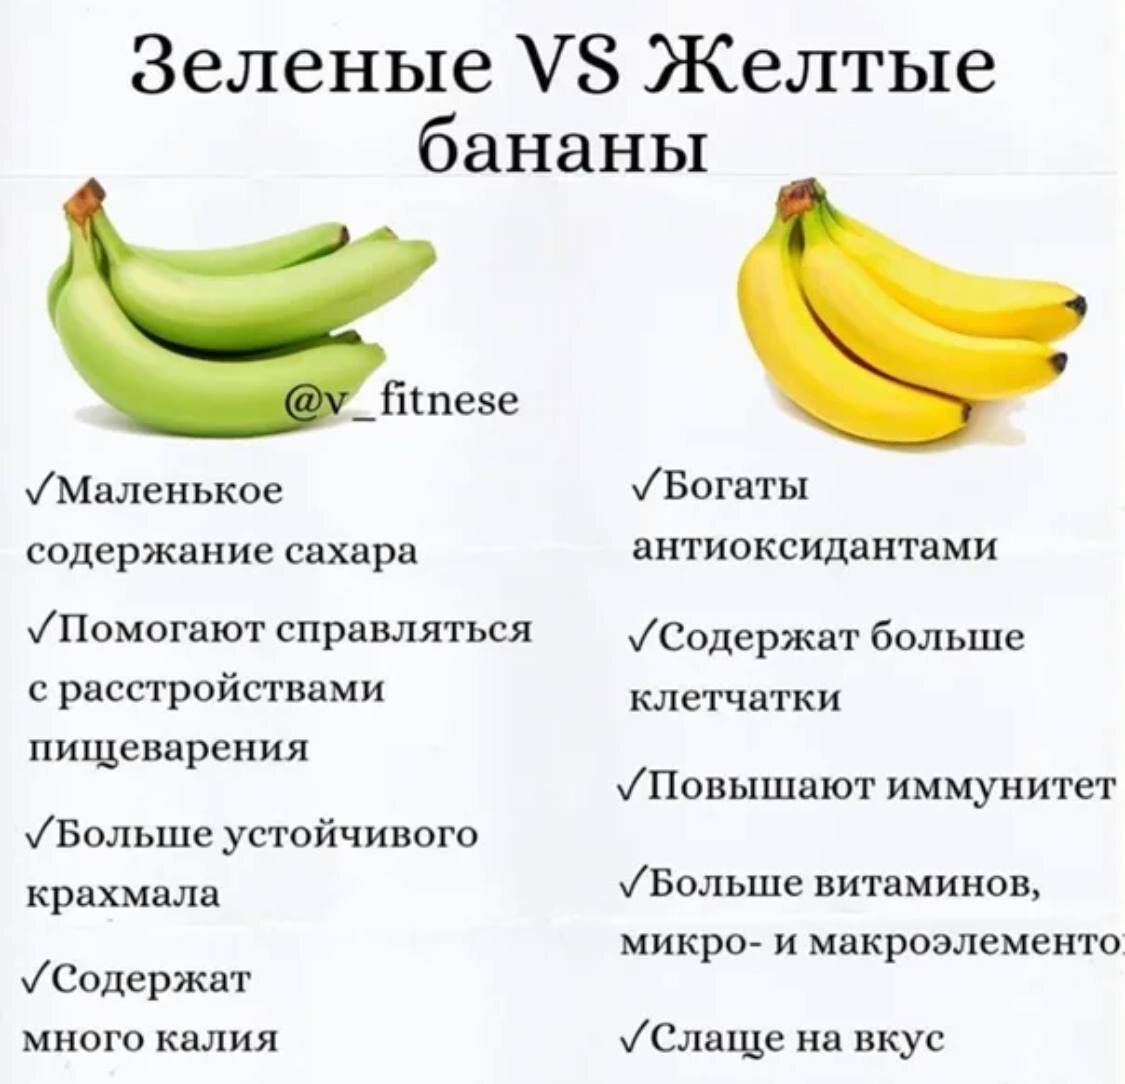 Десертный банан польза. Какие бананы полезно есть. Калорийность зеленых бананов. Чем полезны зеленые бананы. Какие бананы полезнее есть.